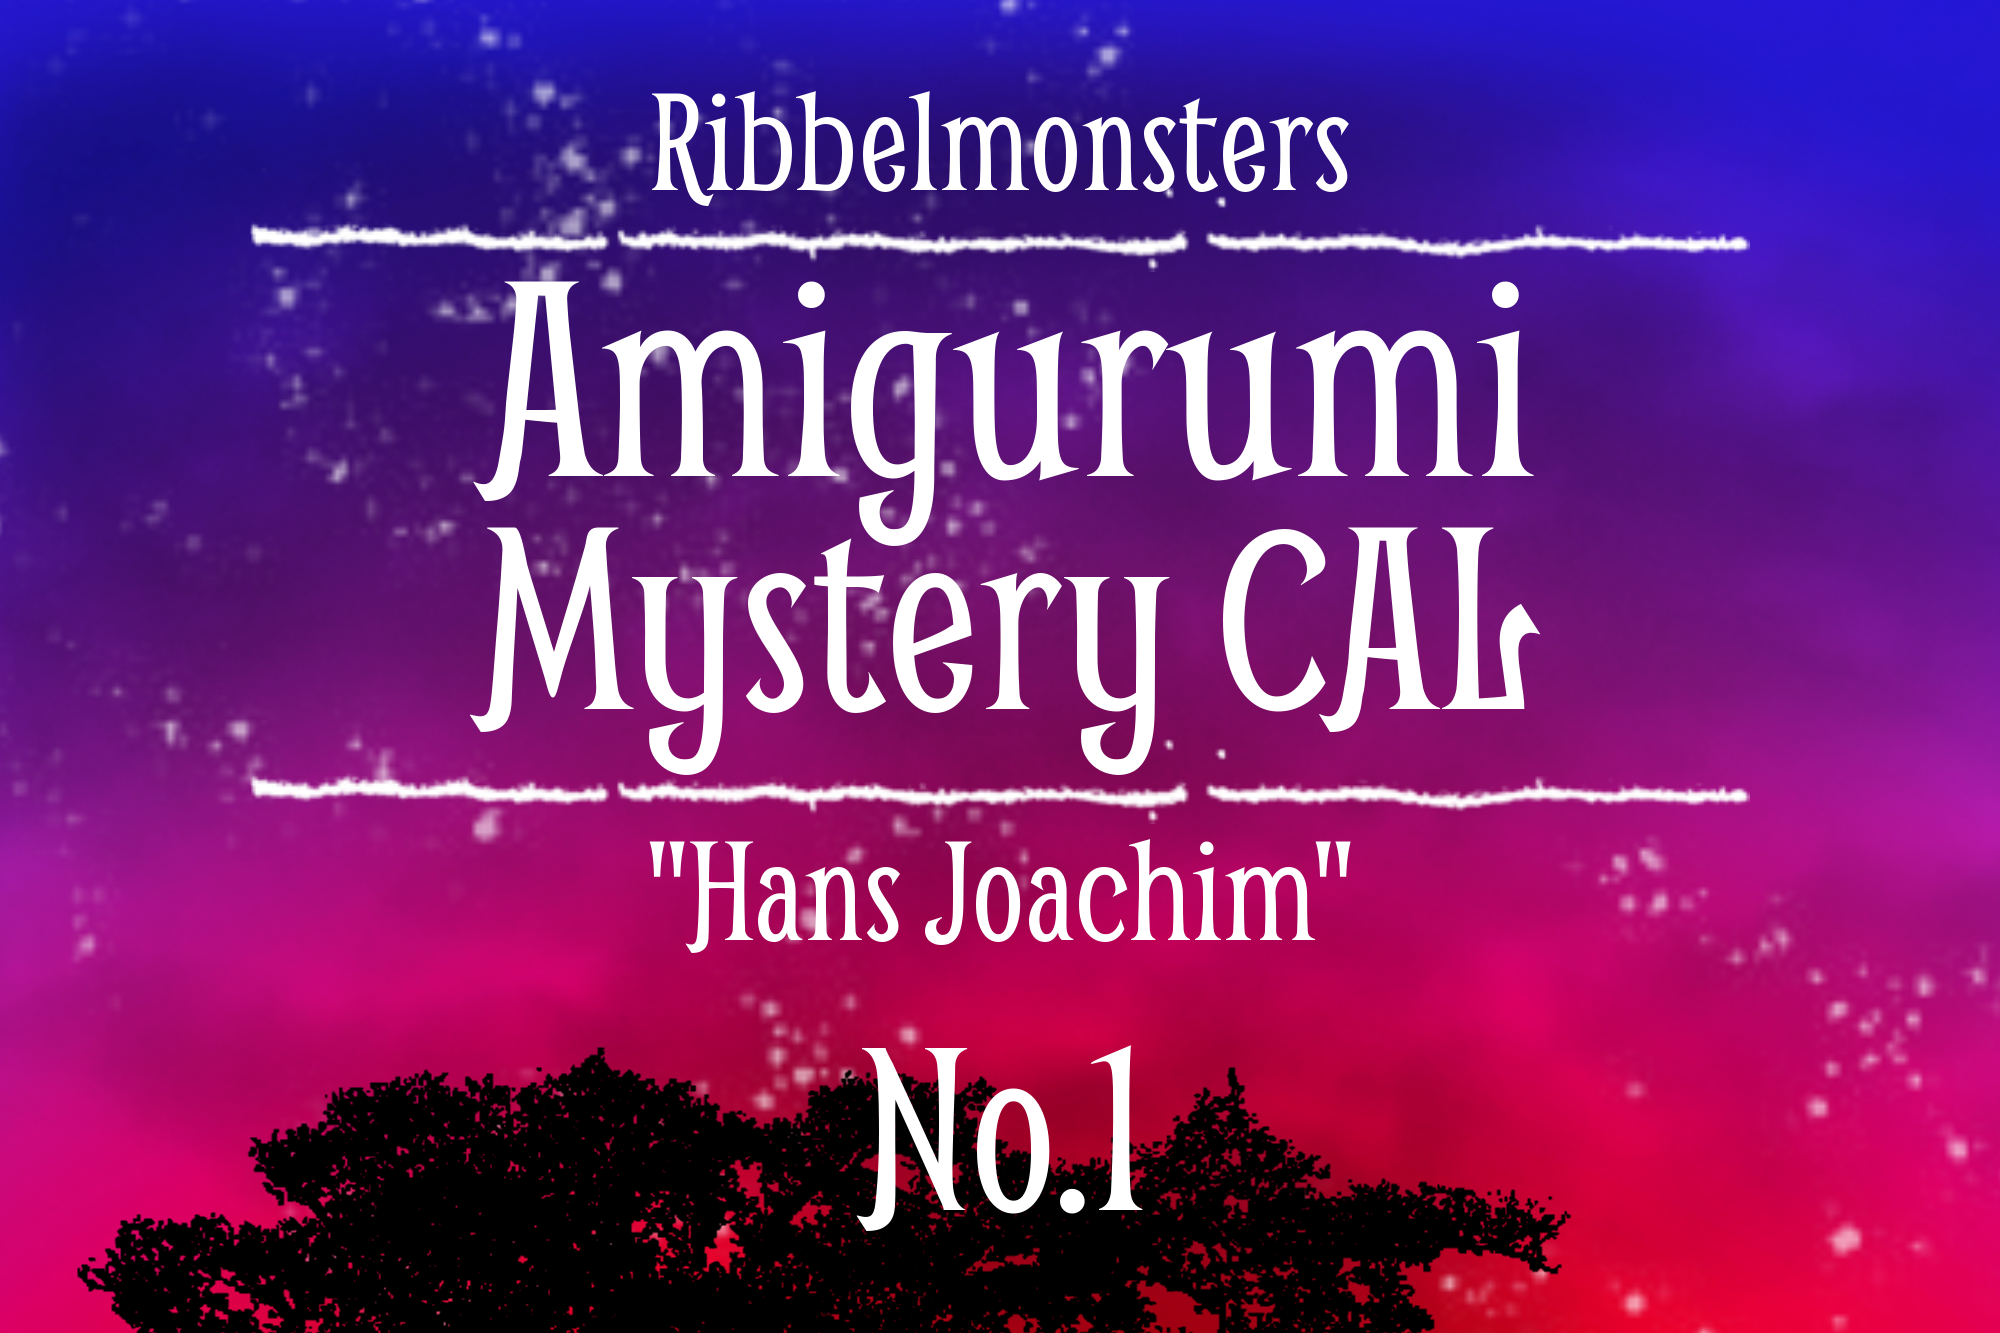 Amigurumi Mystery CAL – “Hans Joachim” – Part 1